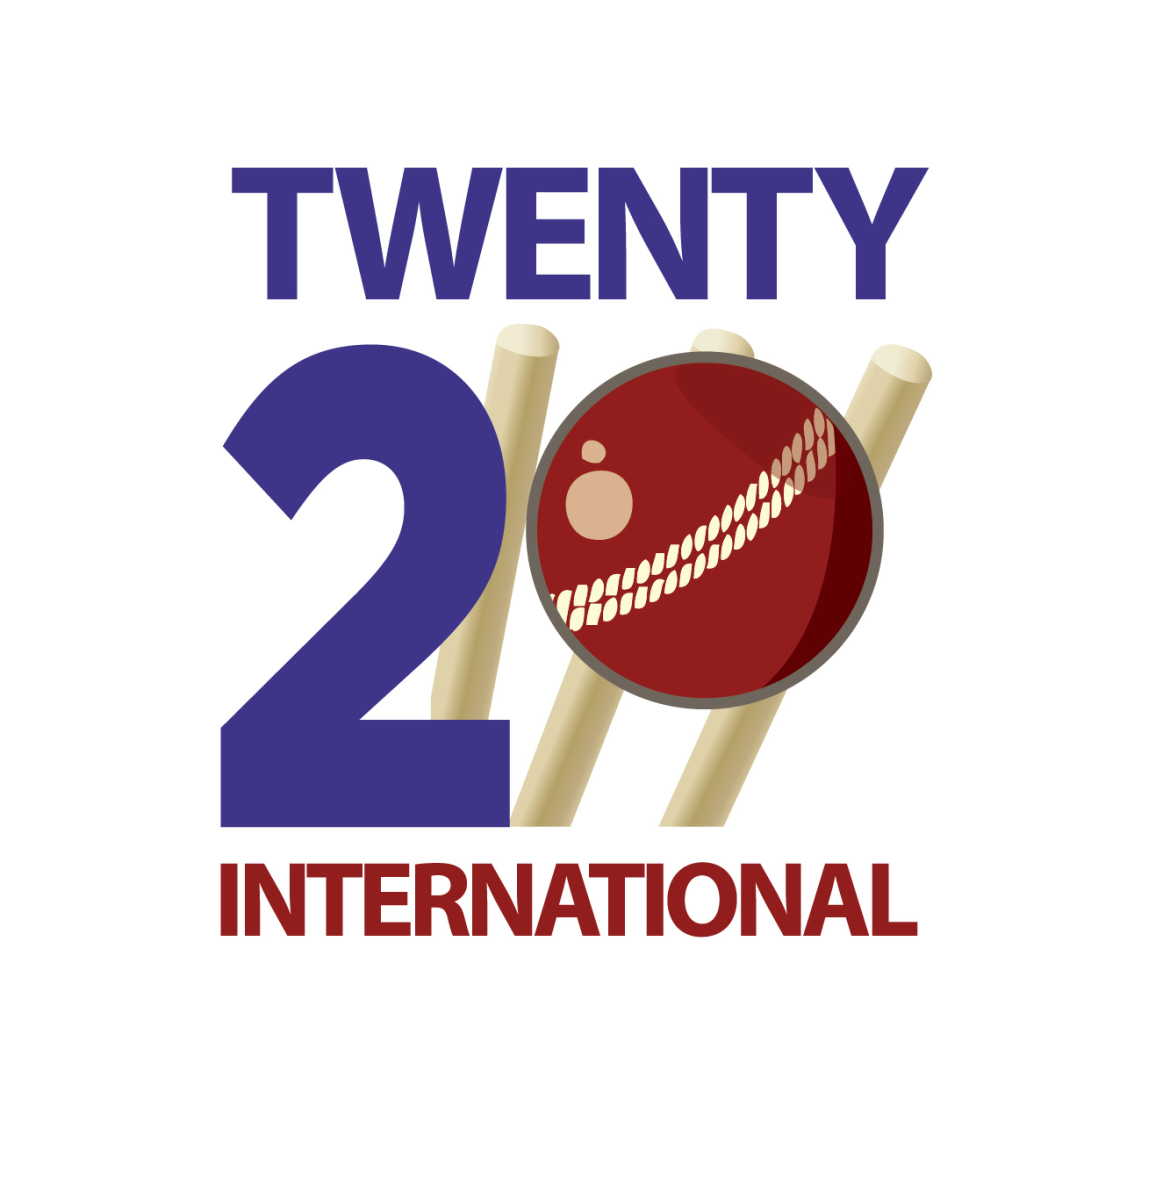 इस साल टी-20 इंटरनेशनल क्रिकेट में ये पांच गेंदबाज हैं सबसे ज्यादा विकेट लेने वालें गेंदबाज, एक भारतीय भी हैं लिस्ट में शामिल 1